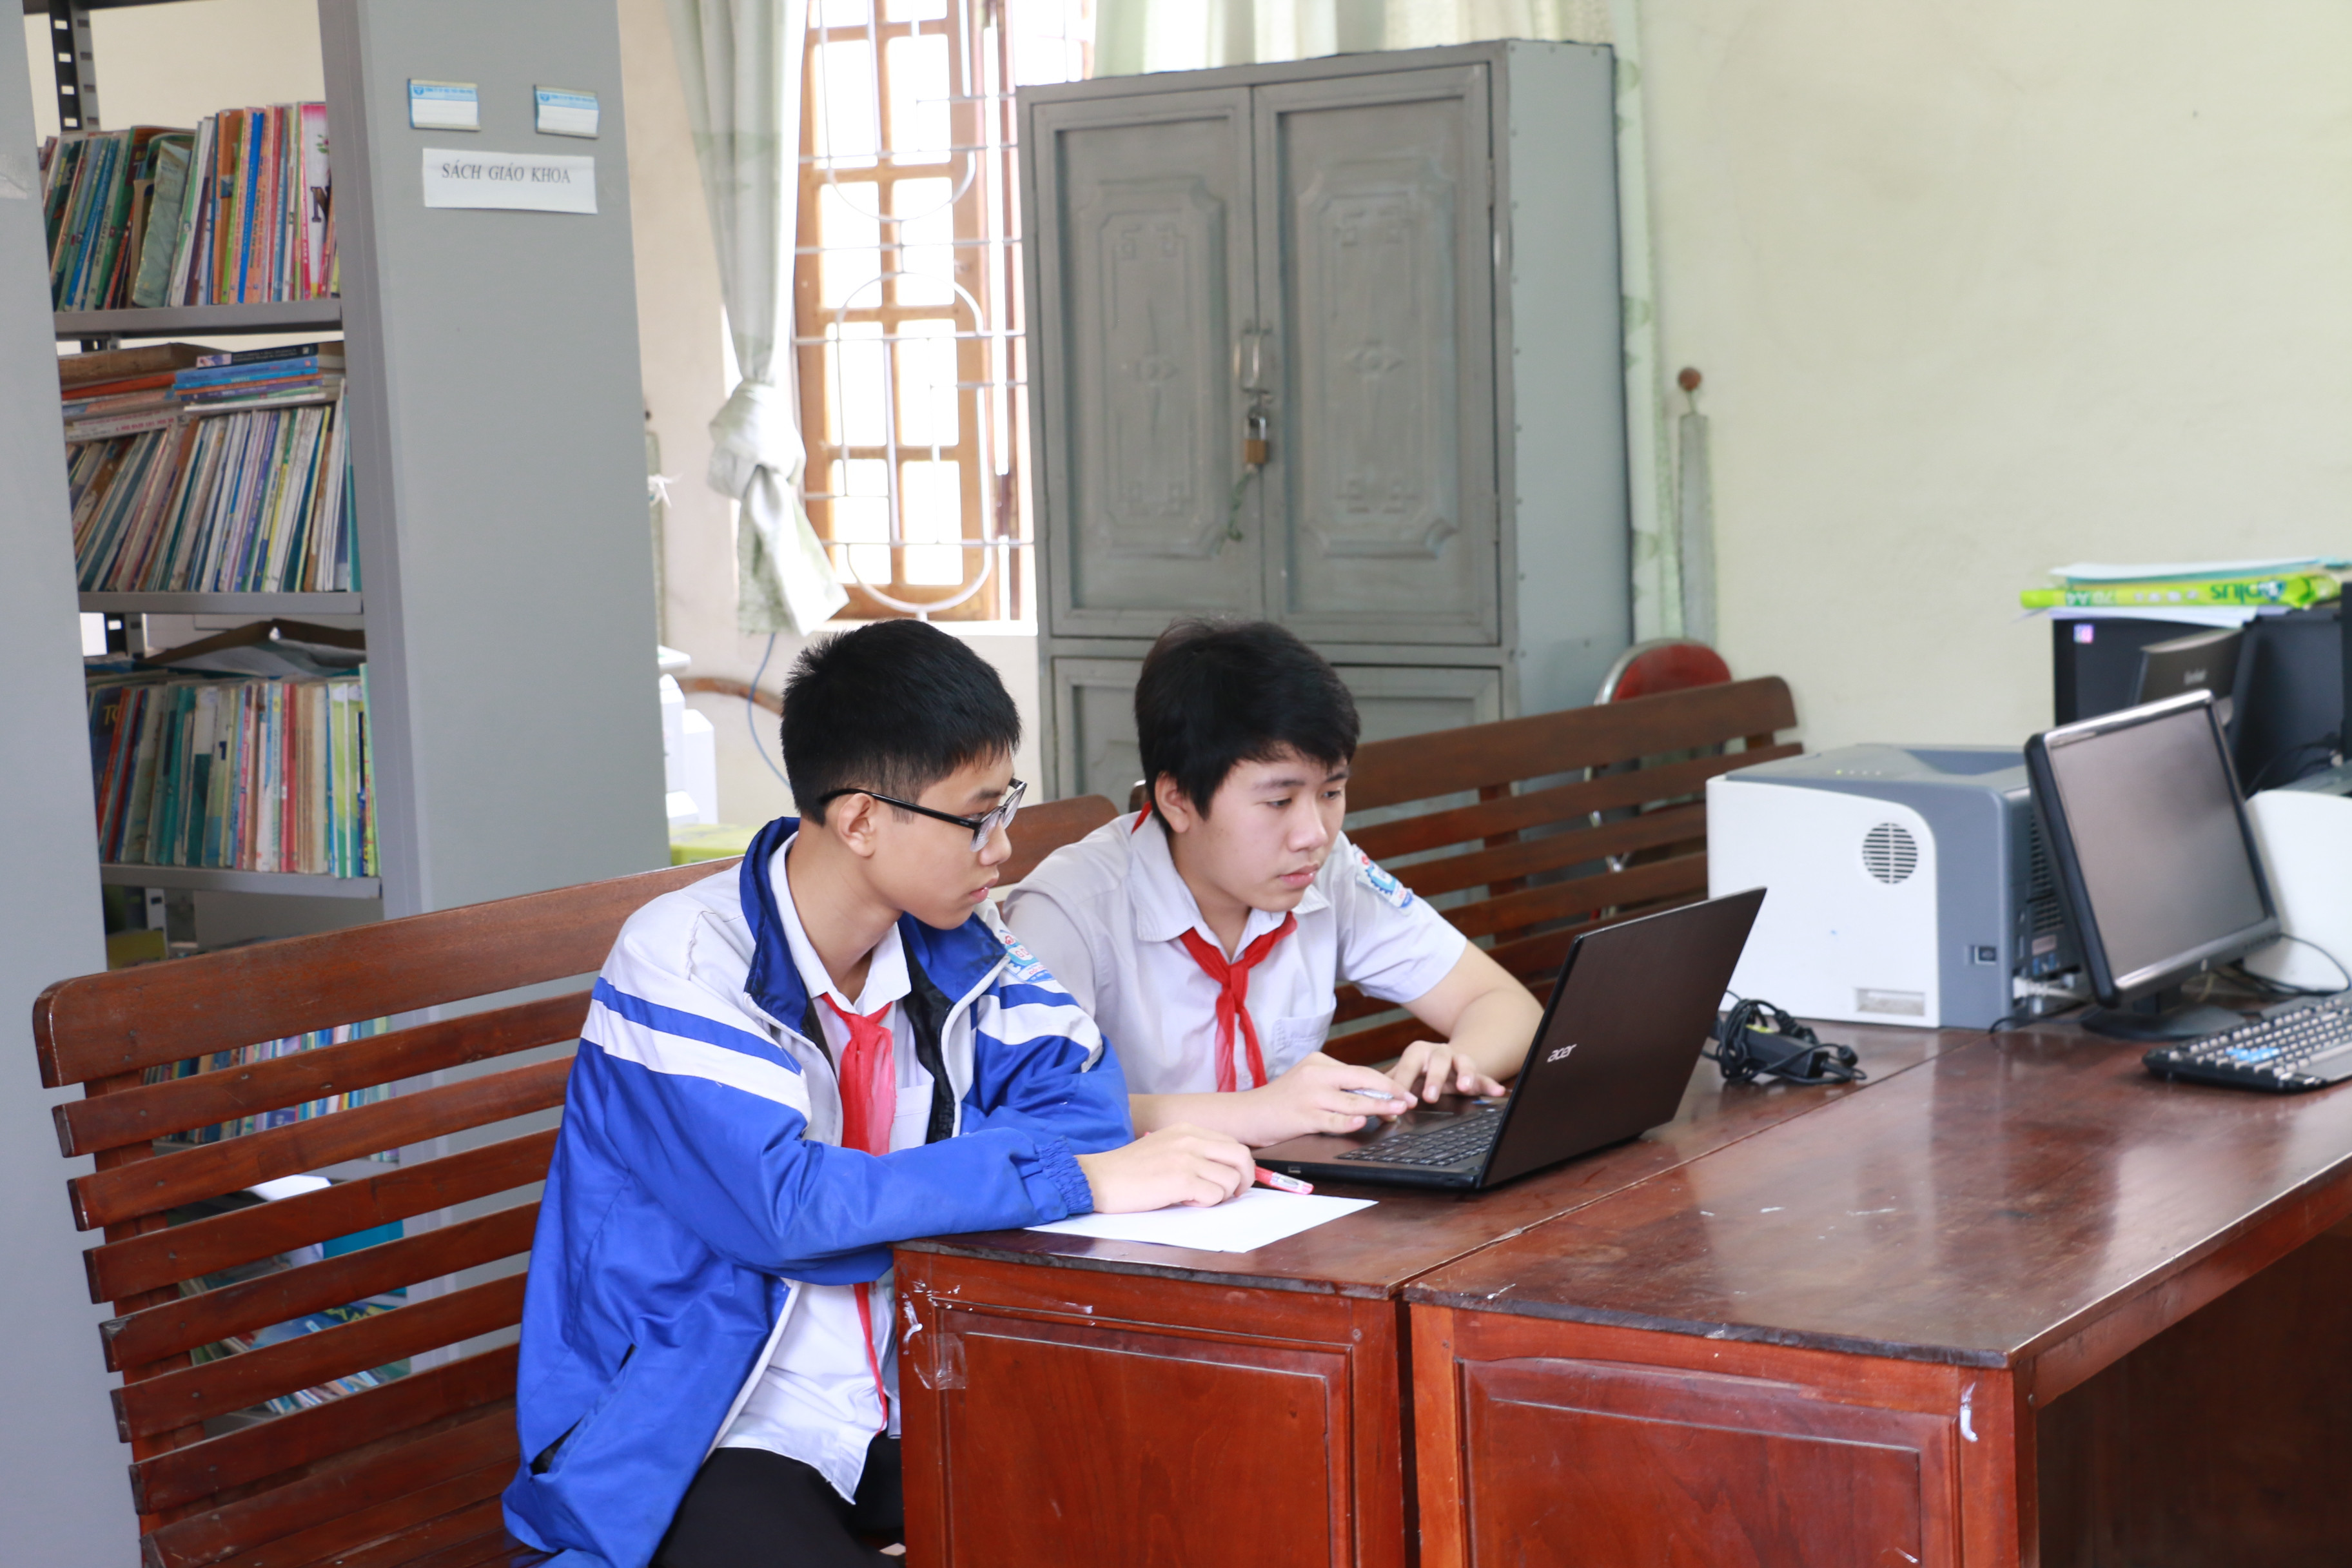 Học trực tuyến là giải pháp của học sinh Lê Văn Phú và những người bạn của mình trong thời gian này. Ảnh: Mỹ Hà